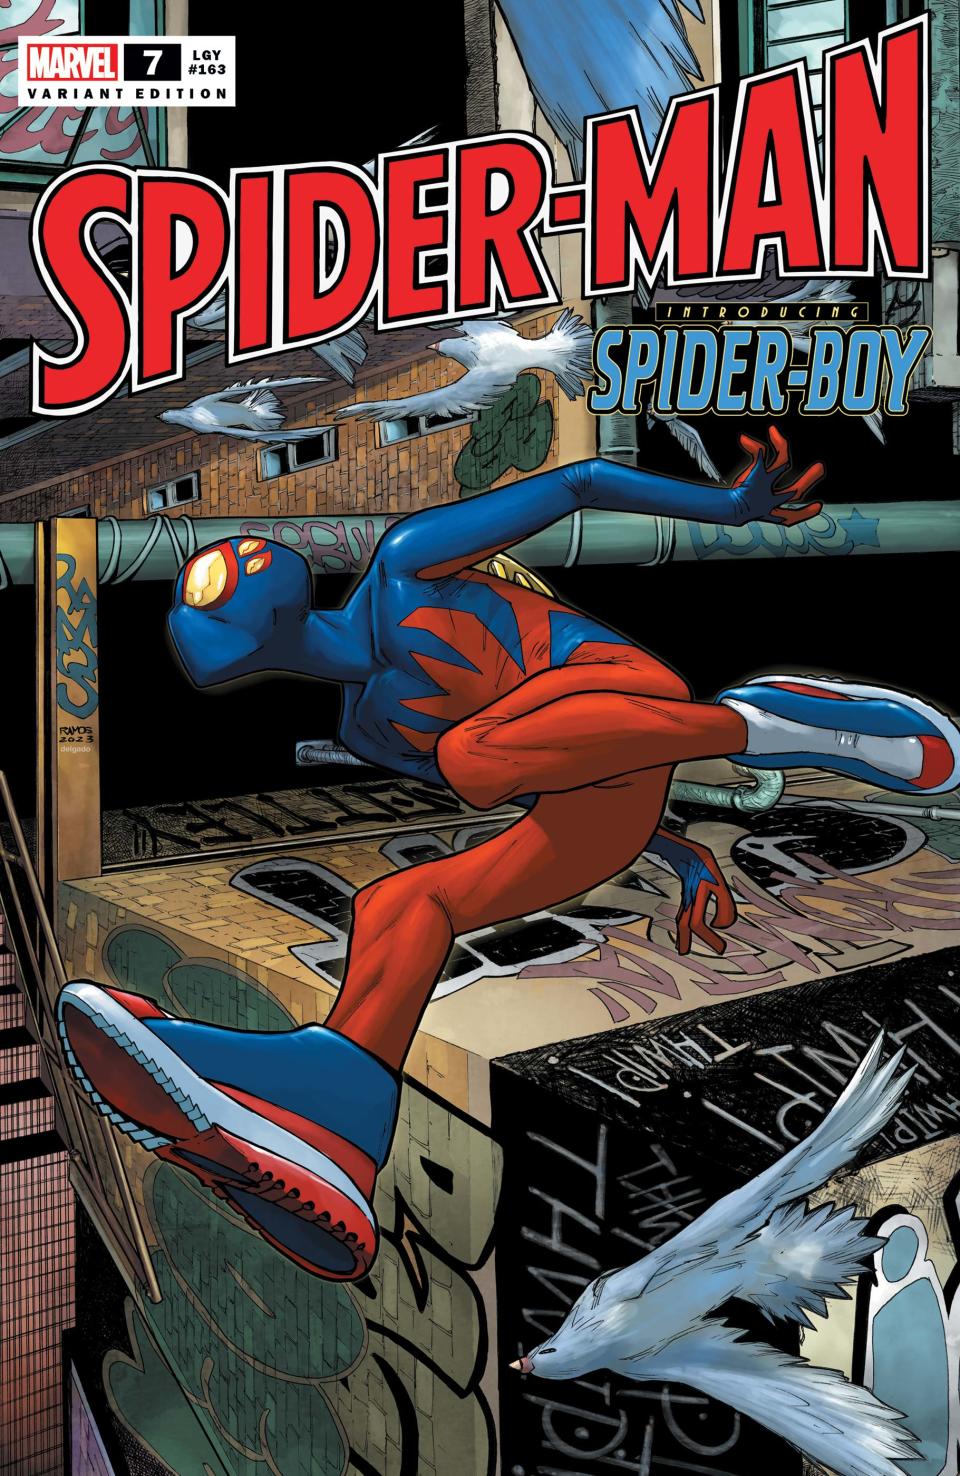 Spider-Man #7 cover art featuring Spider-Boy